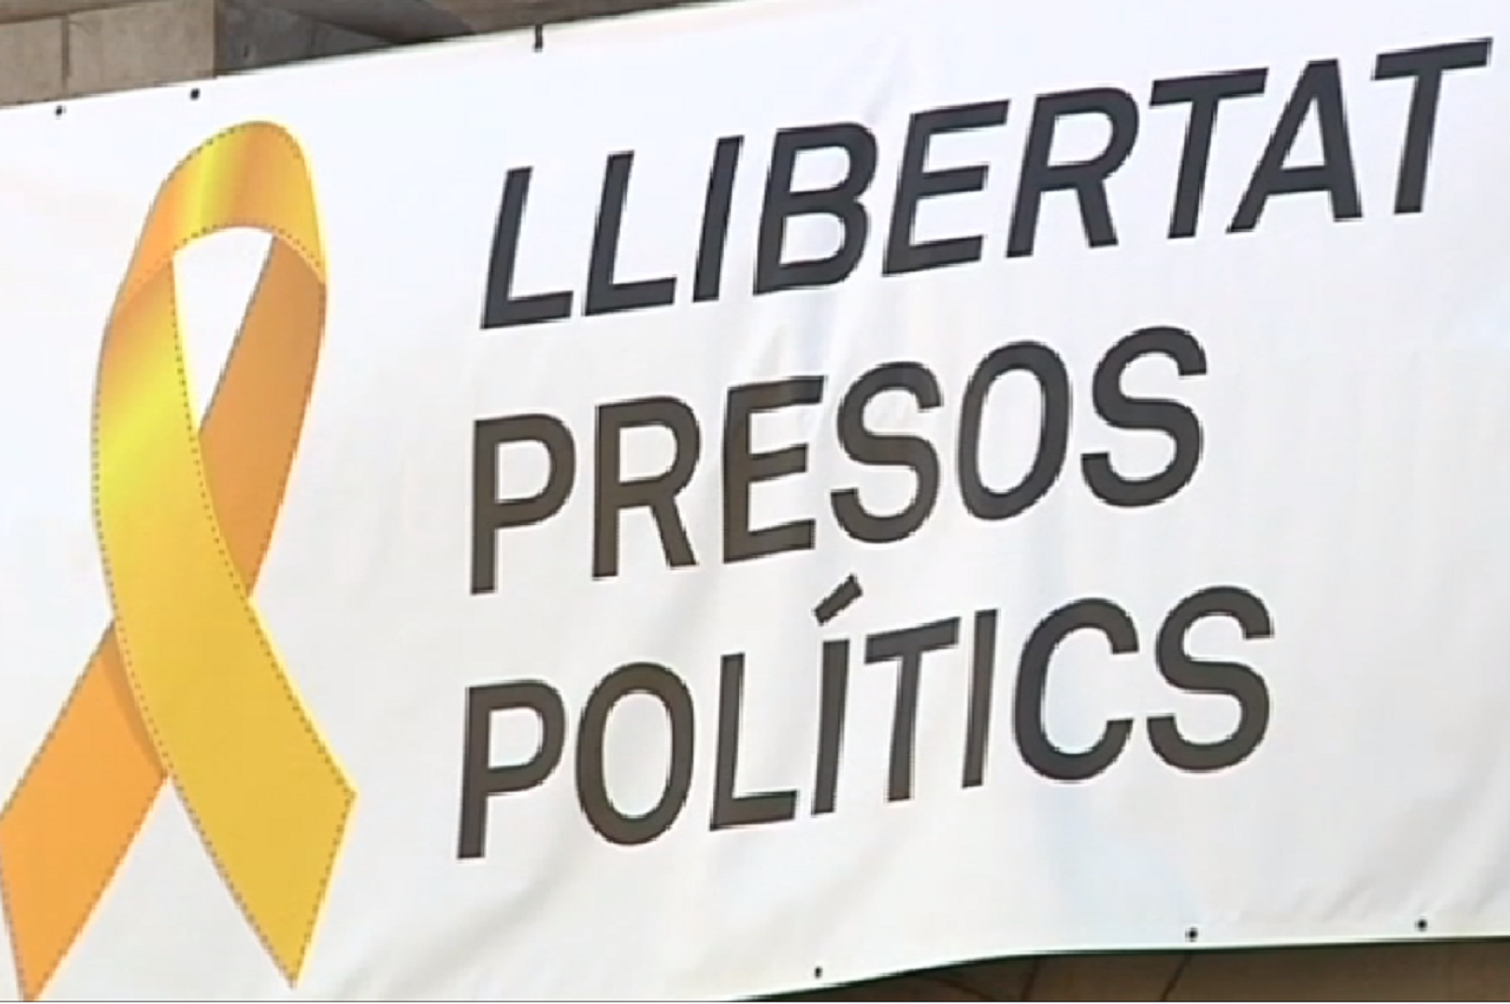 La Junta Electoral ordena a Colau retirar la pancarta de "Llibertat presos polítics"